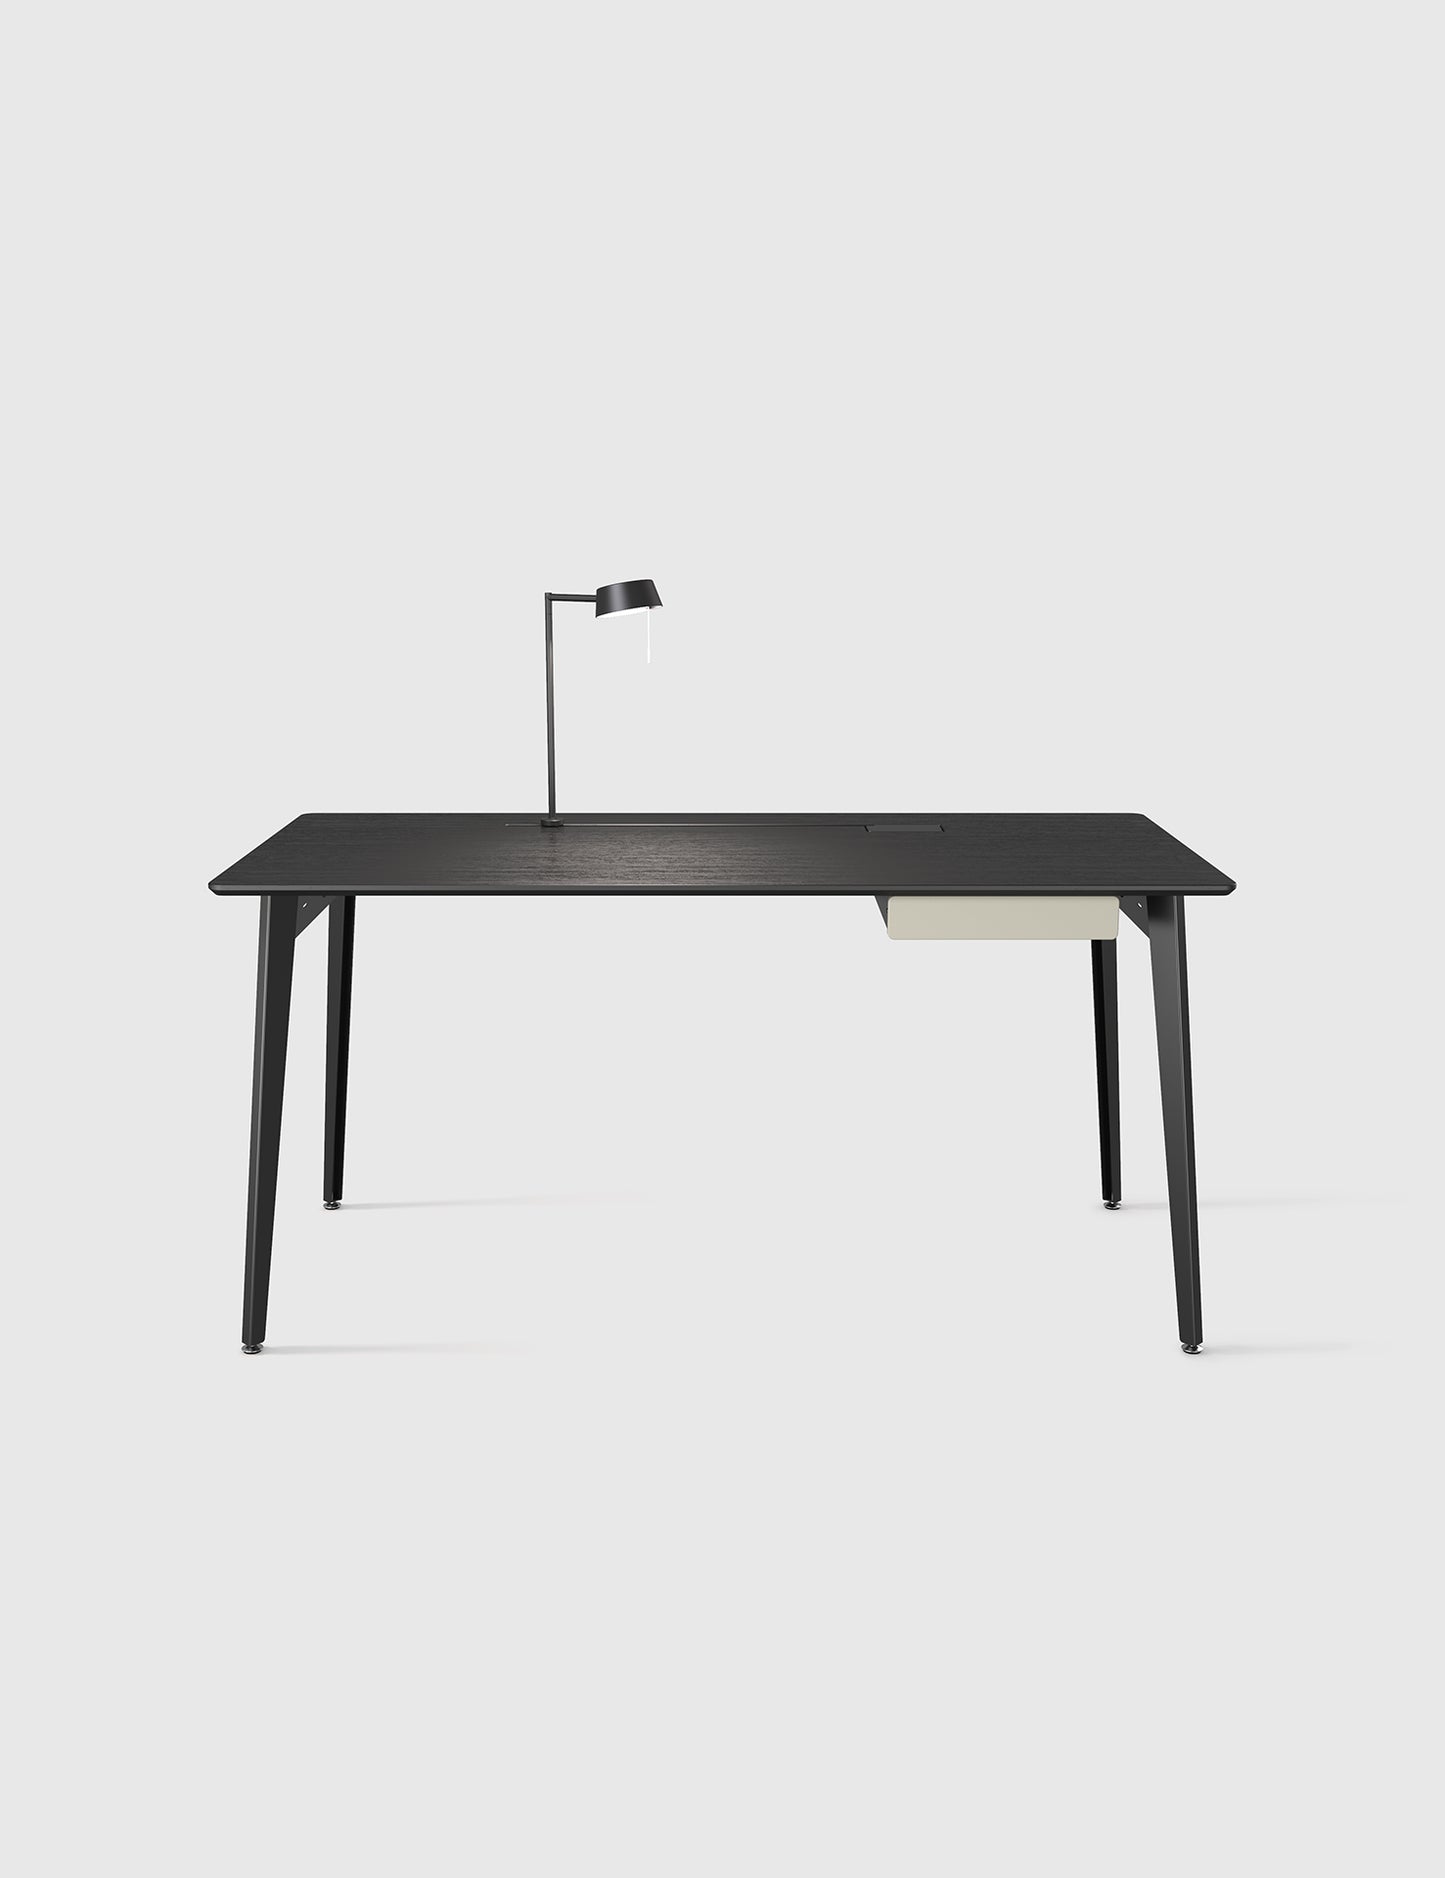 שולחן משרדי שחור עם מנורה ומגירה, שולחן משרדי מעוצב, שולחן משרדי מינימליסטי, שולחן עבודה שחור